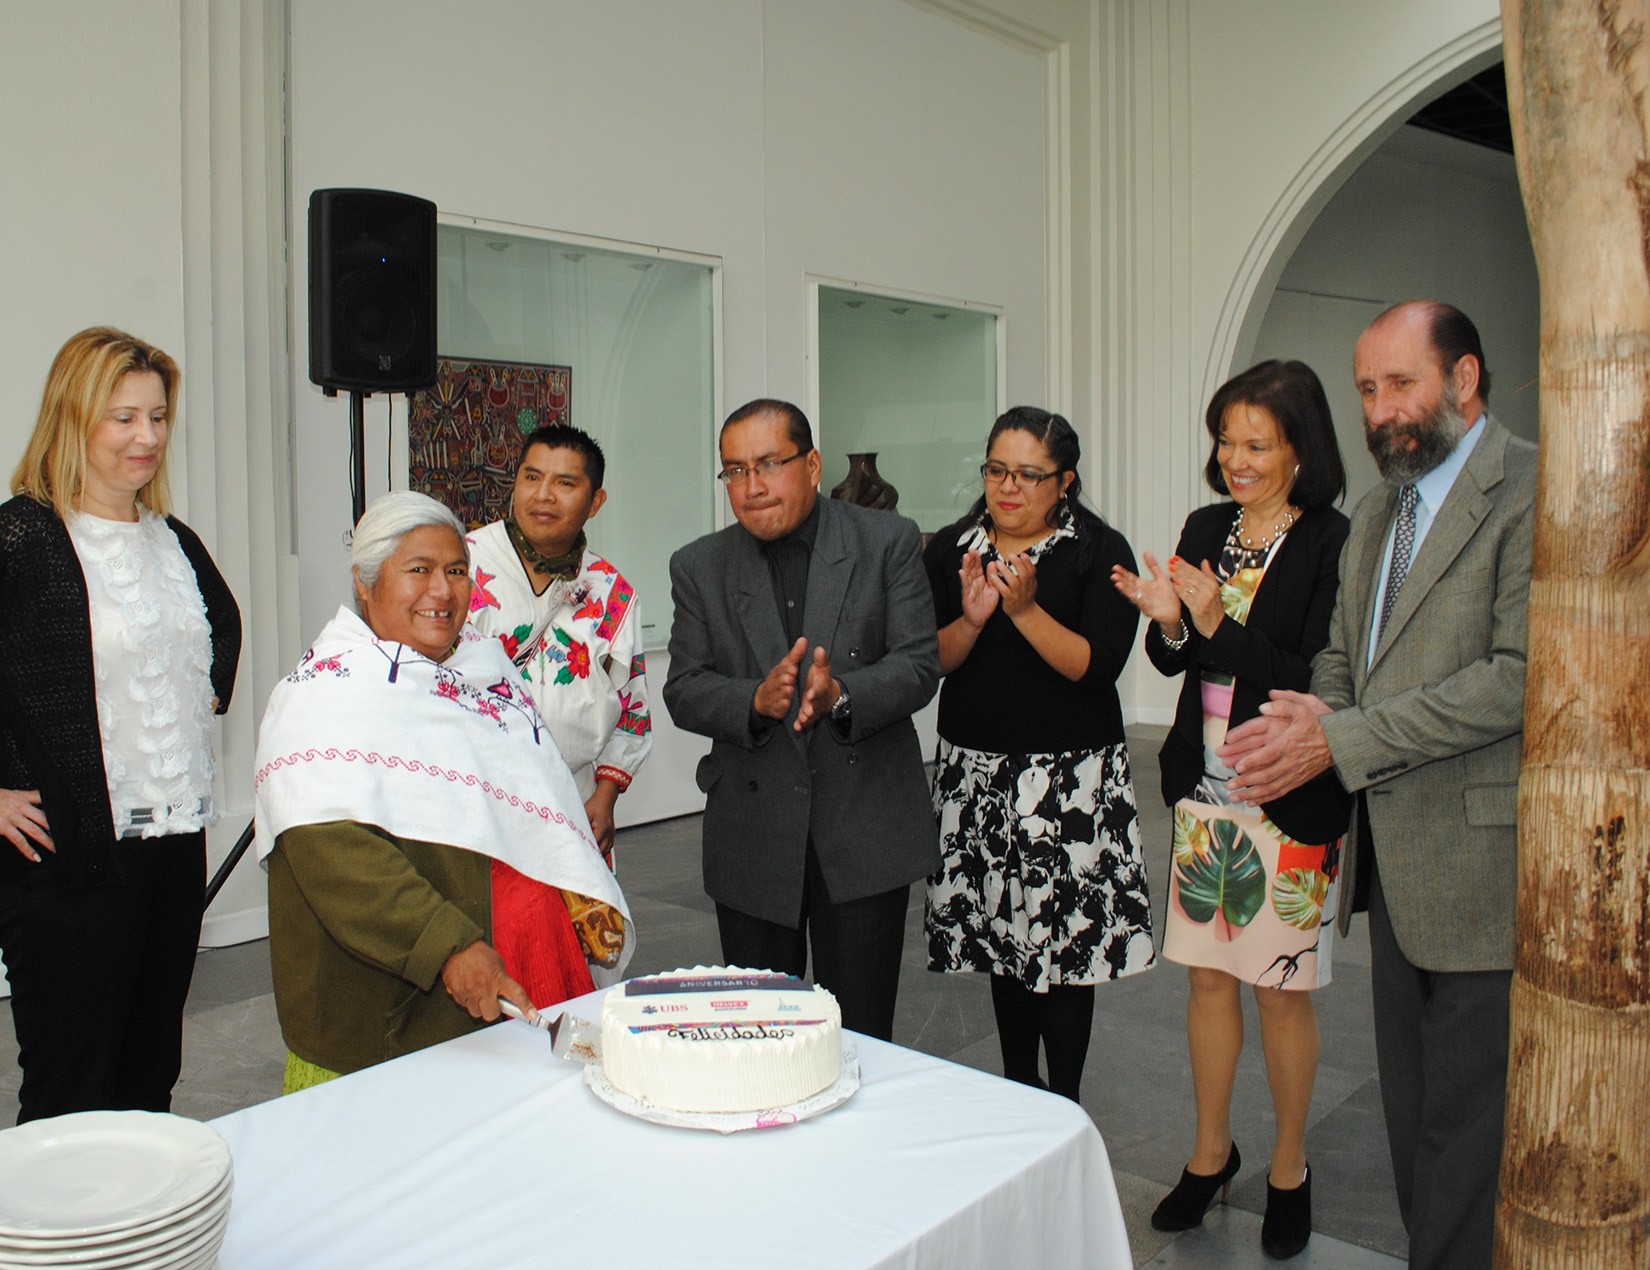 Artesanos partiendo el pastel en celebración del décimo aniversario del MAP para desayuno del patronato con artesanos. (Foto: AmigosMAP).